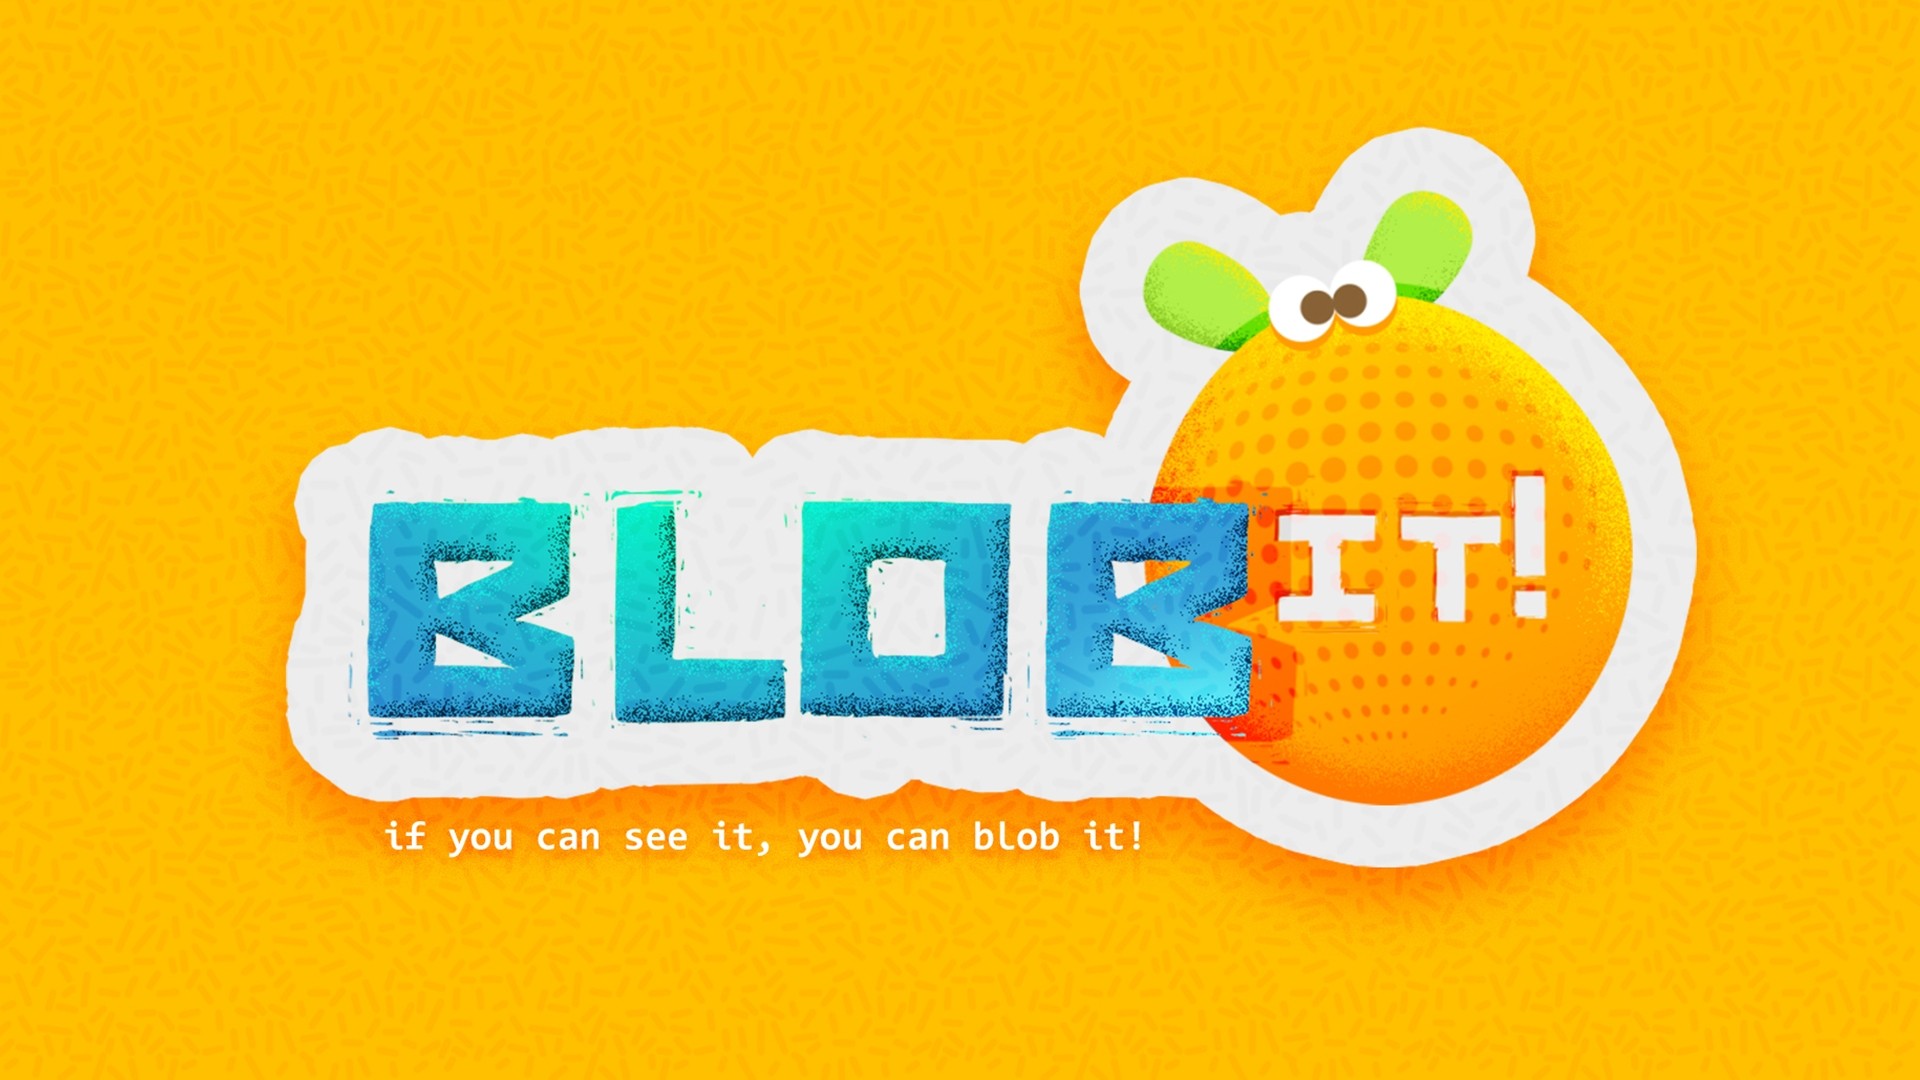 Le Kit Blob !